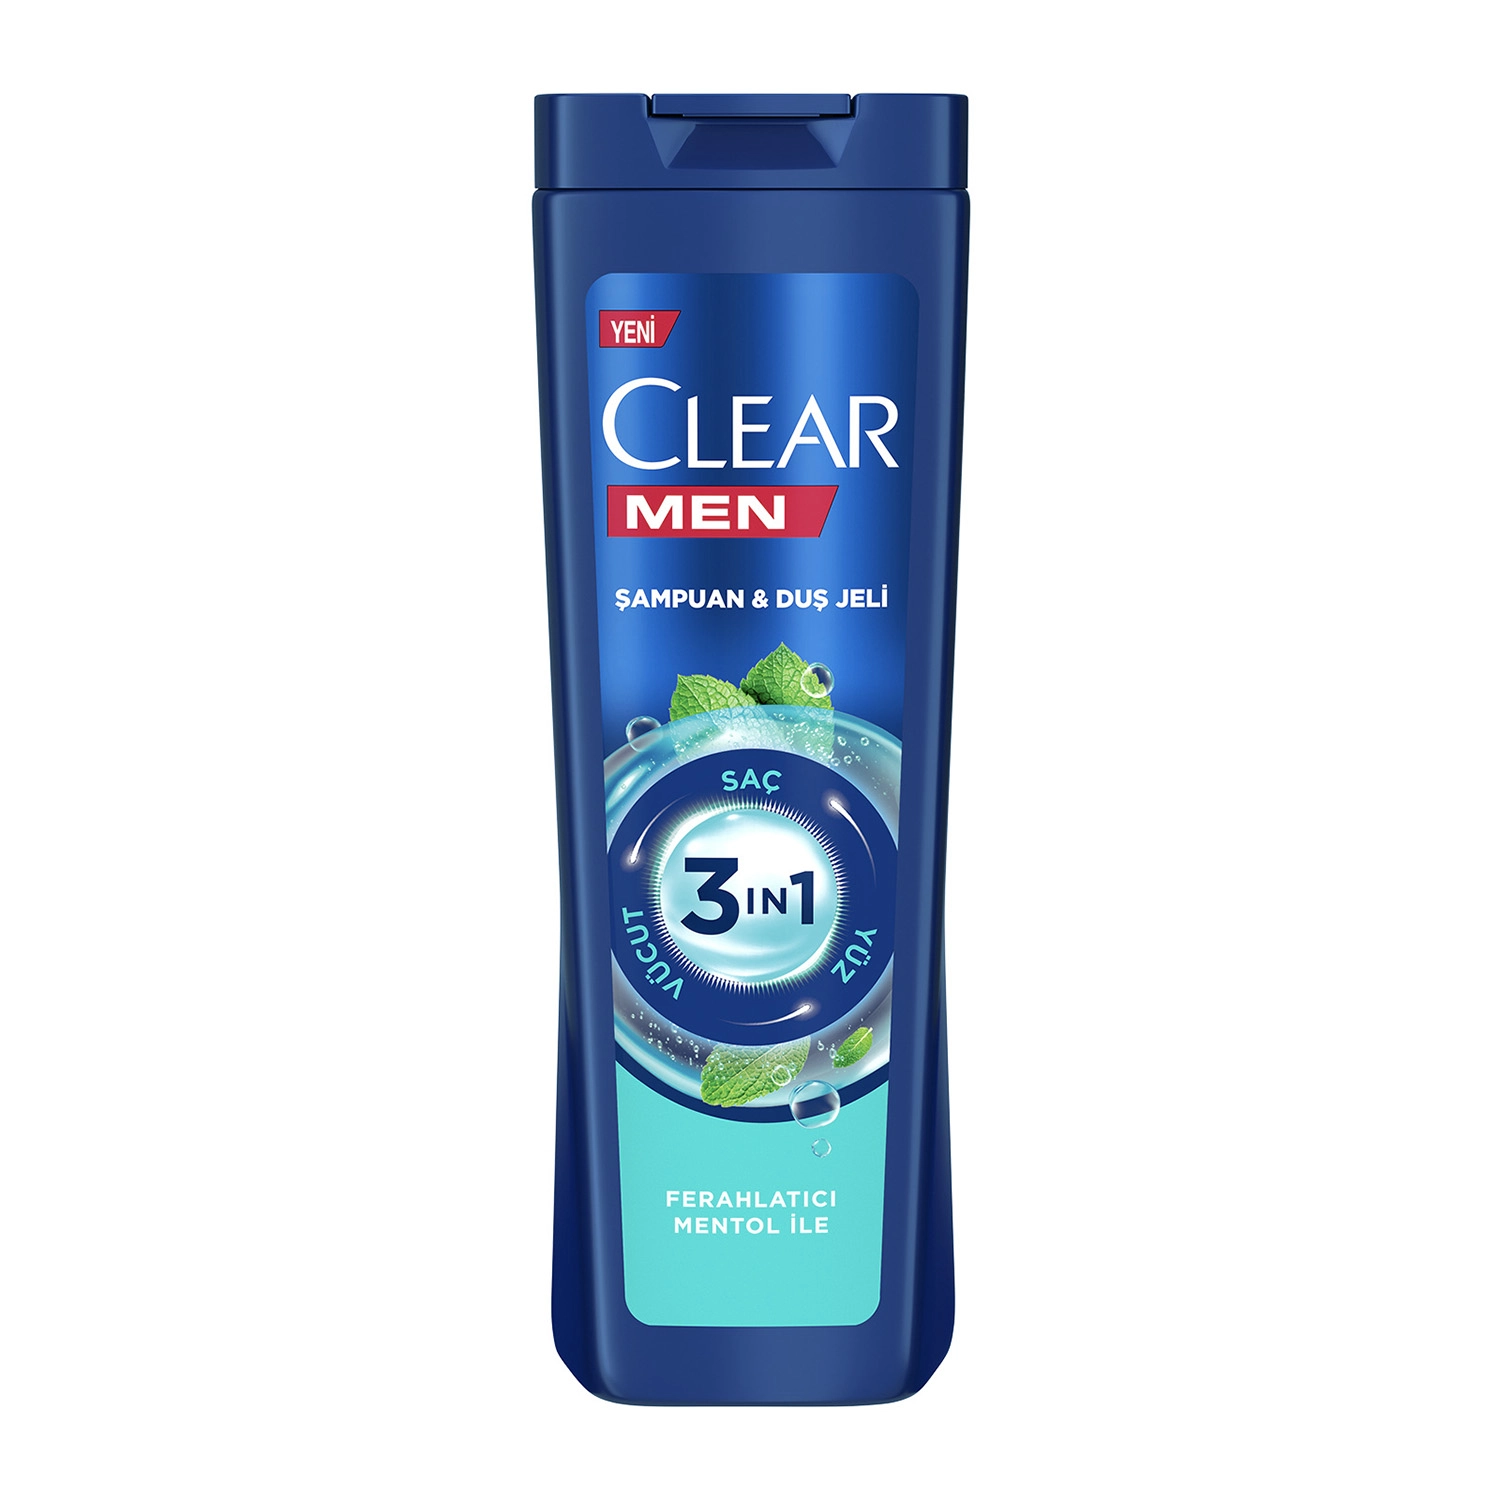 Clear Men 3 in 1 Şampuan & Duş Jeli Ferahlatıcı Mentol Etkisi Saç Yüz Vücut İçin 350 ml - Saç Bakım Güzellik